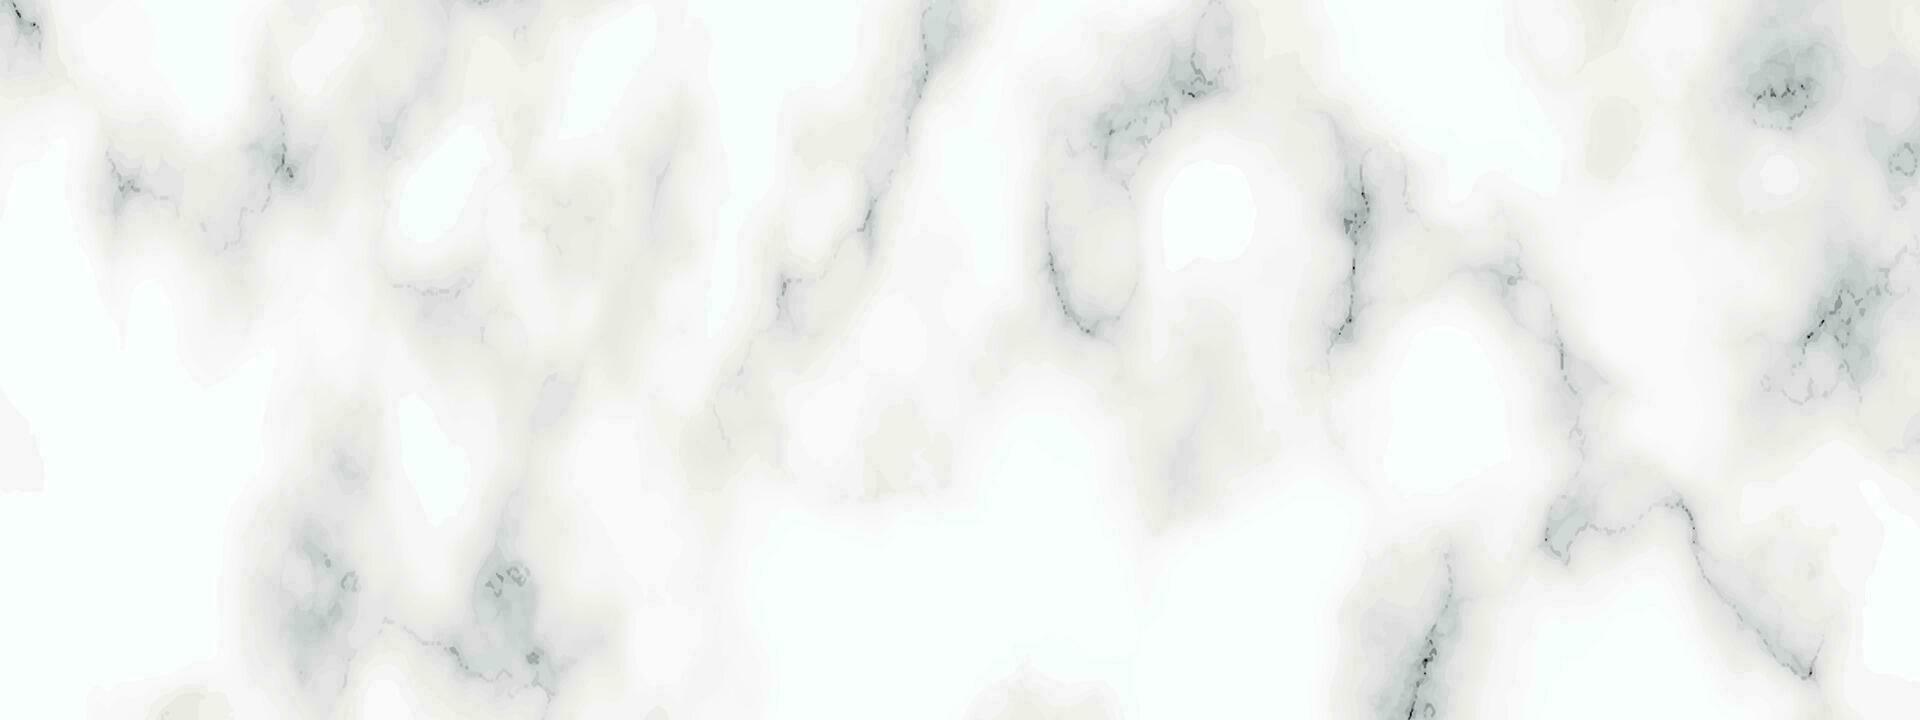 wit panorama marmeren textuur. abstract licht elegant wit voor verdieping keramisch teller structuur steen plaat glad tegel grijs zilver natuurlijk. vector